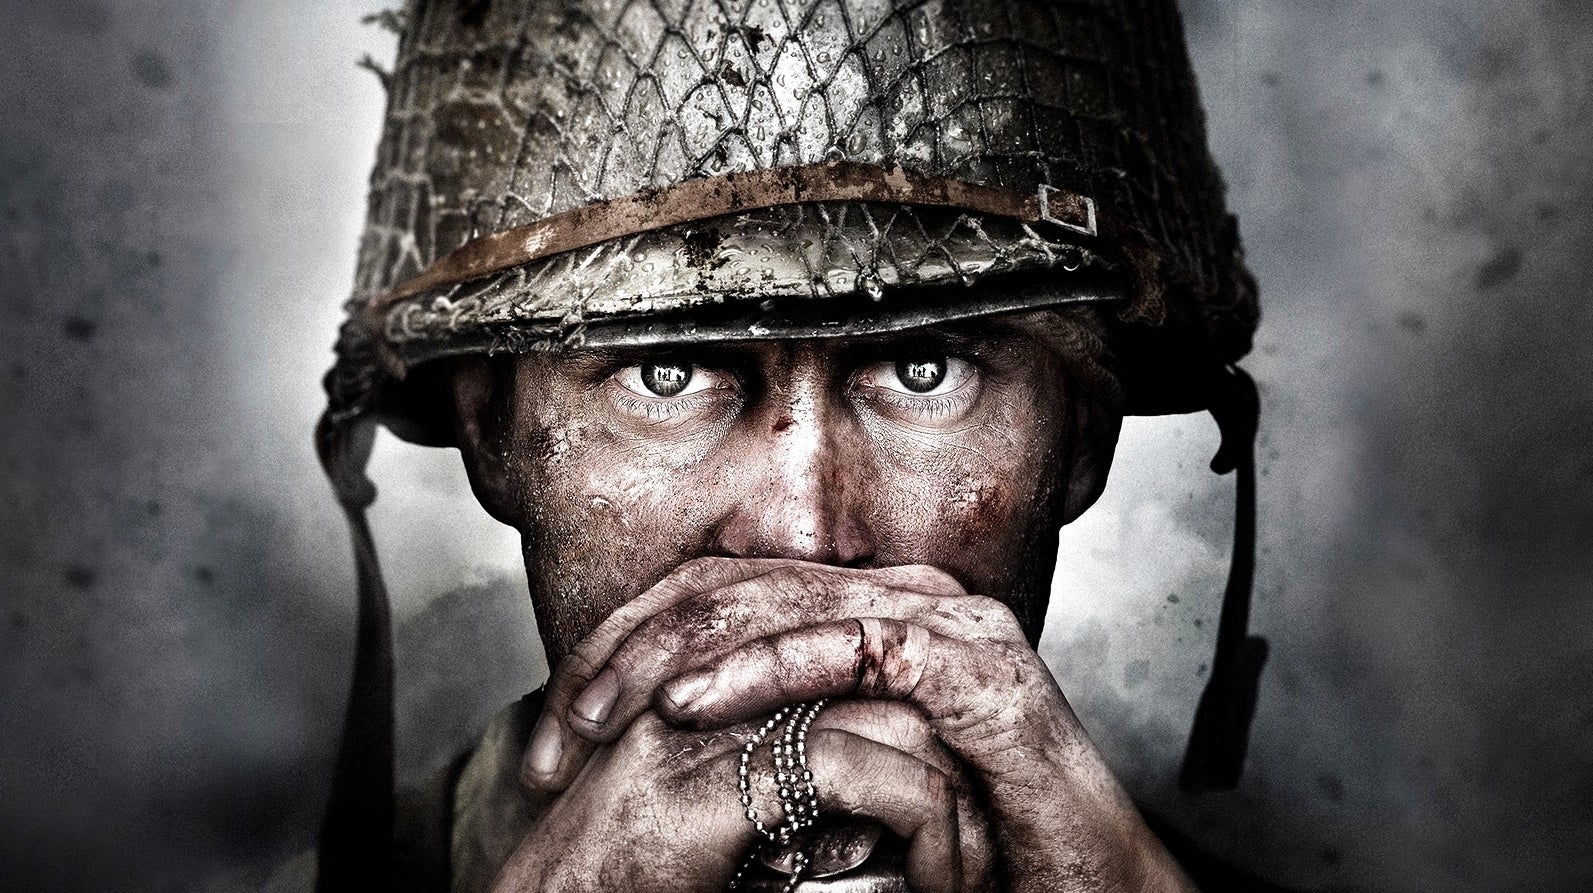 Bilder zu Bericht: Das nächste Call of Duty heißt Vanguard und spielt wieder im Zweiten Weltkrieg